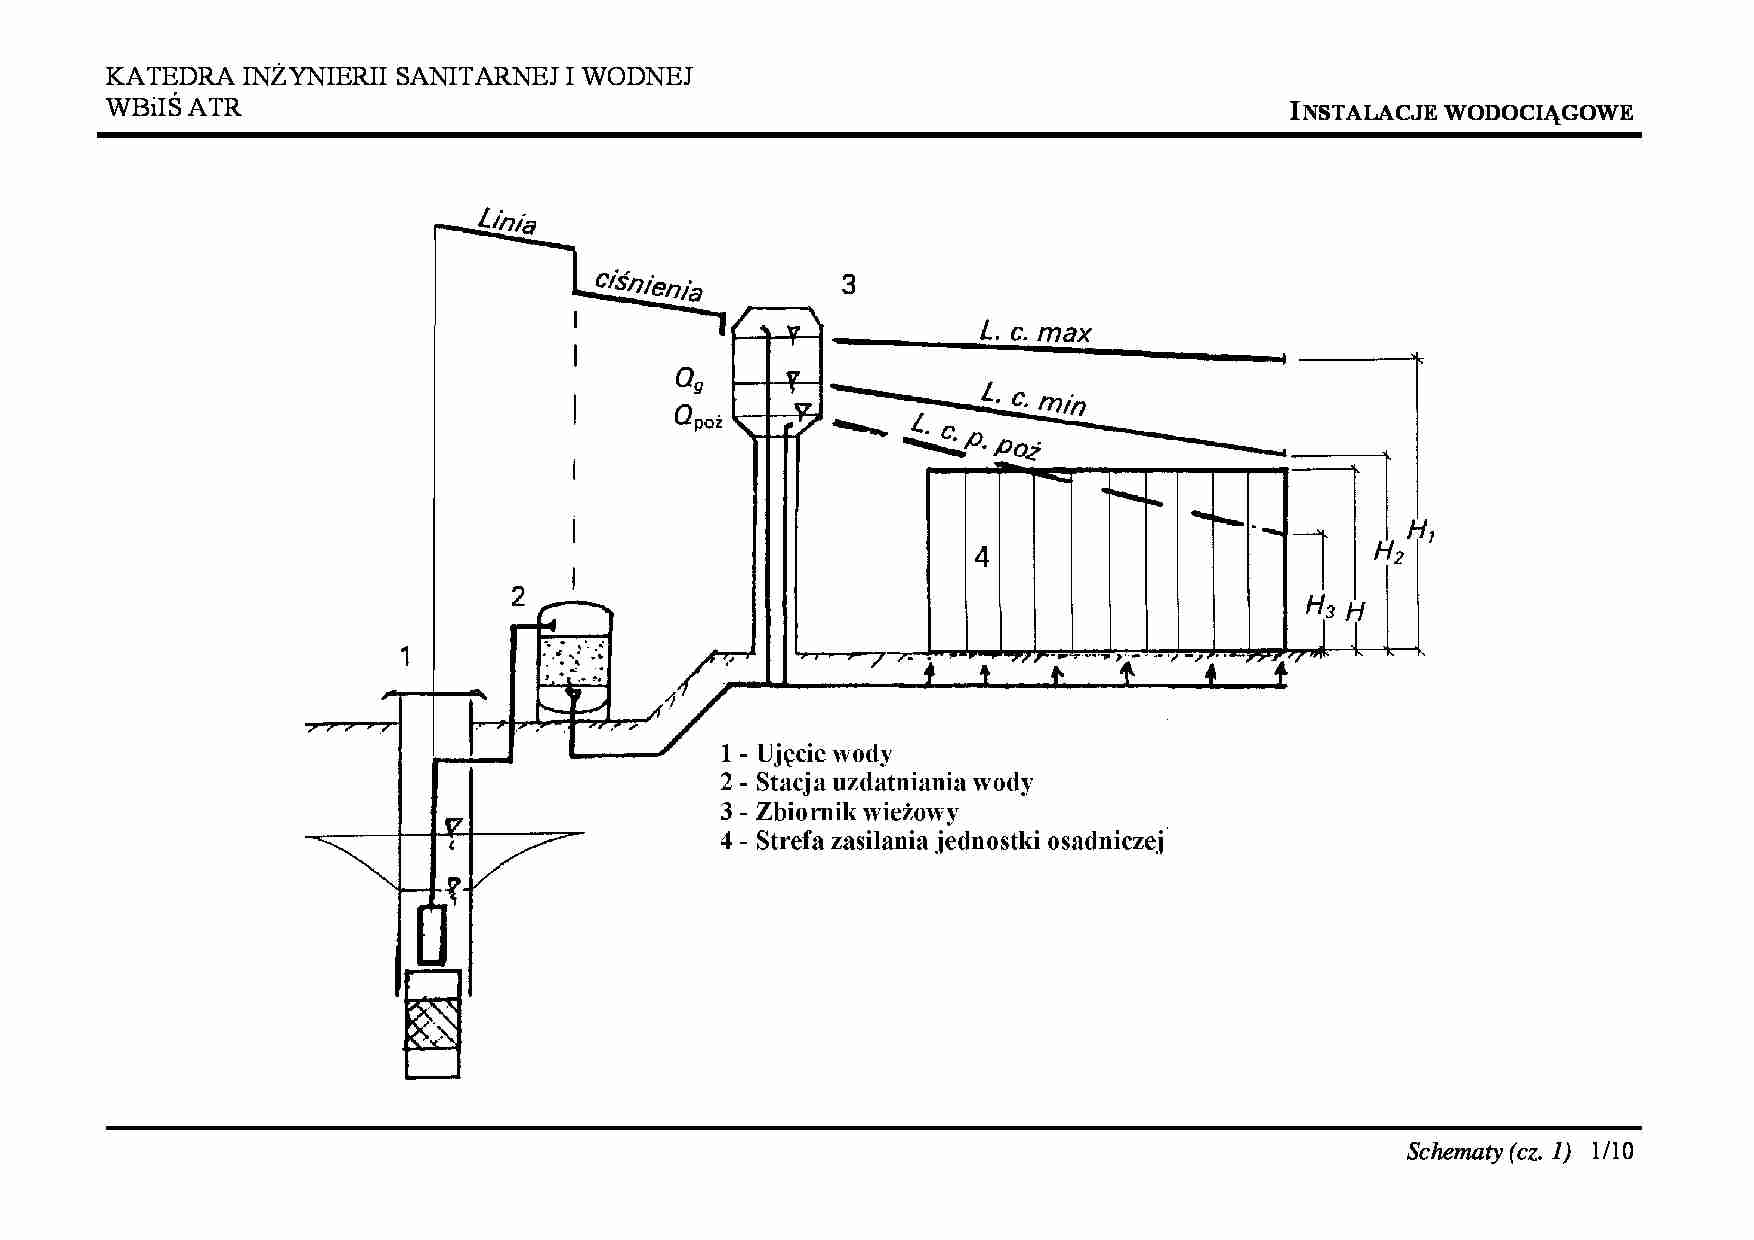 Schematy-instalacje wodociągowe - strona 1